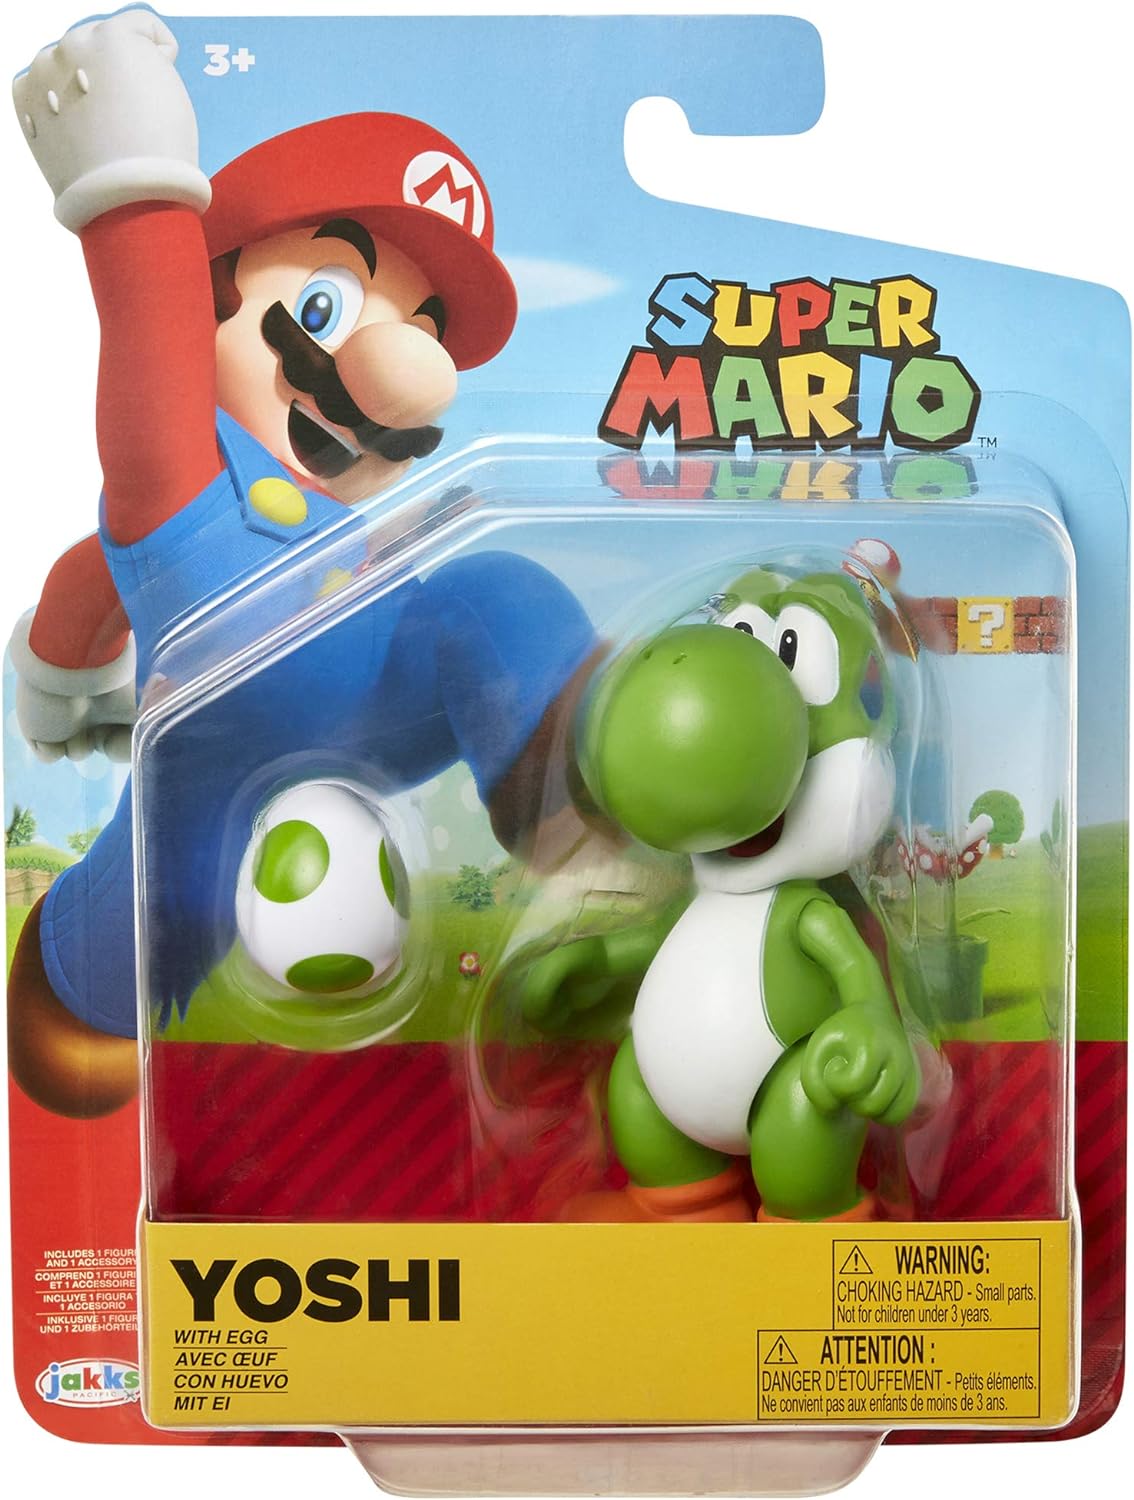 Super Mario Yoshi